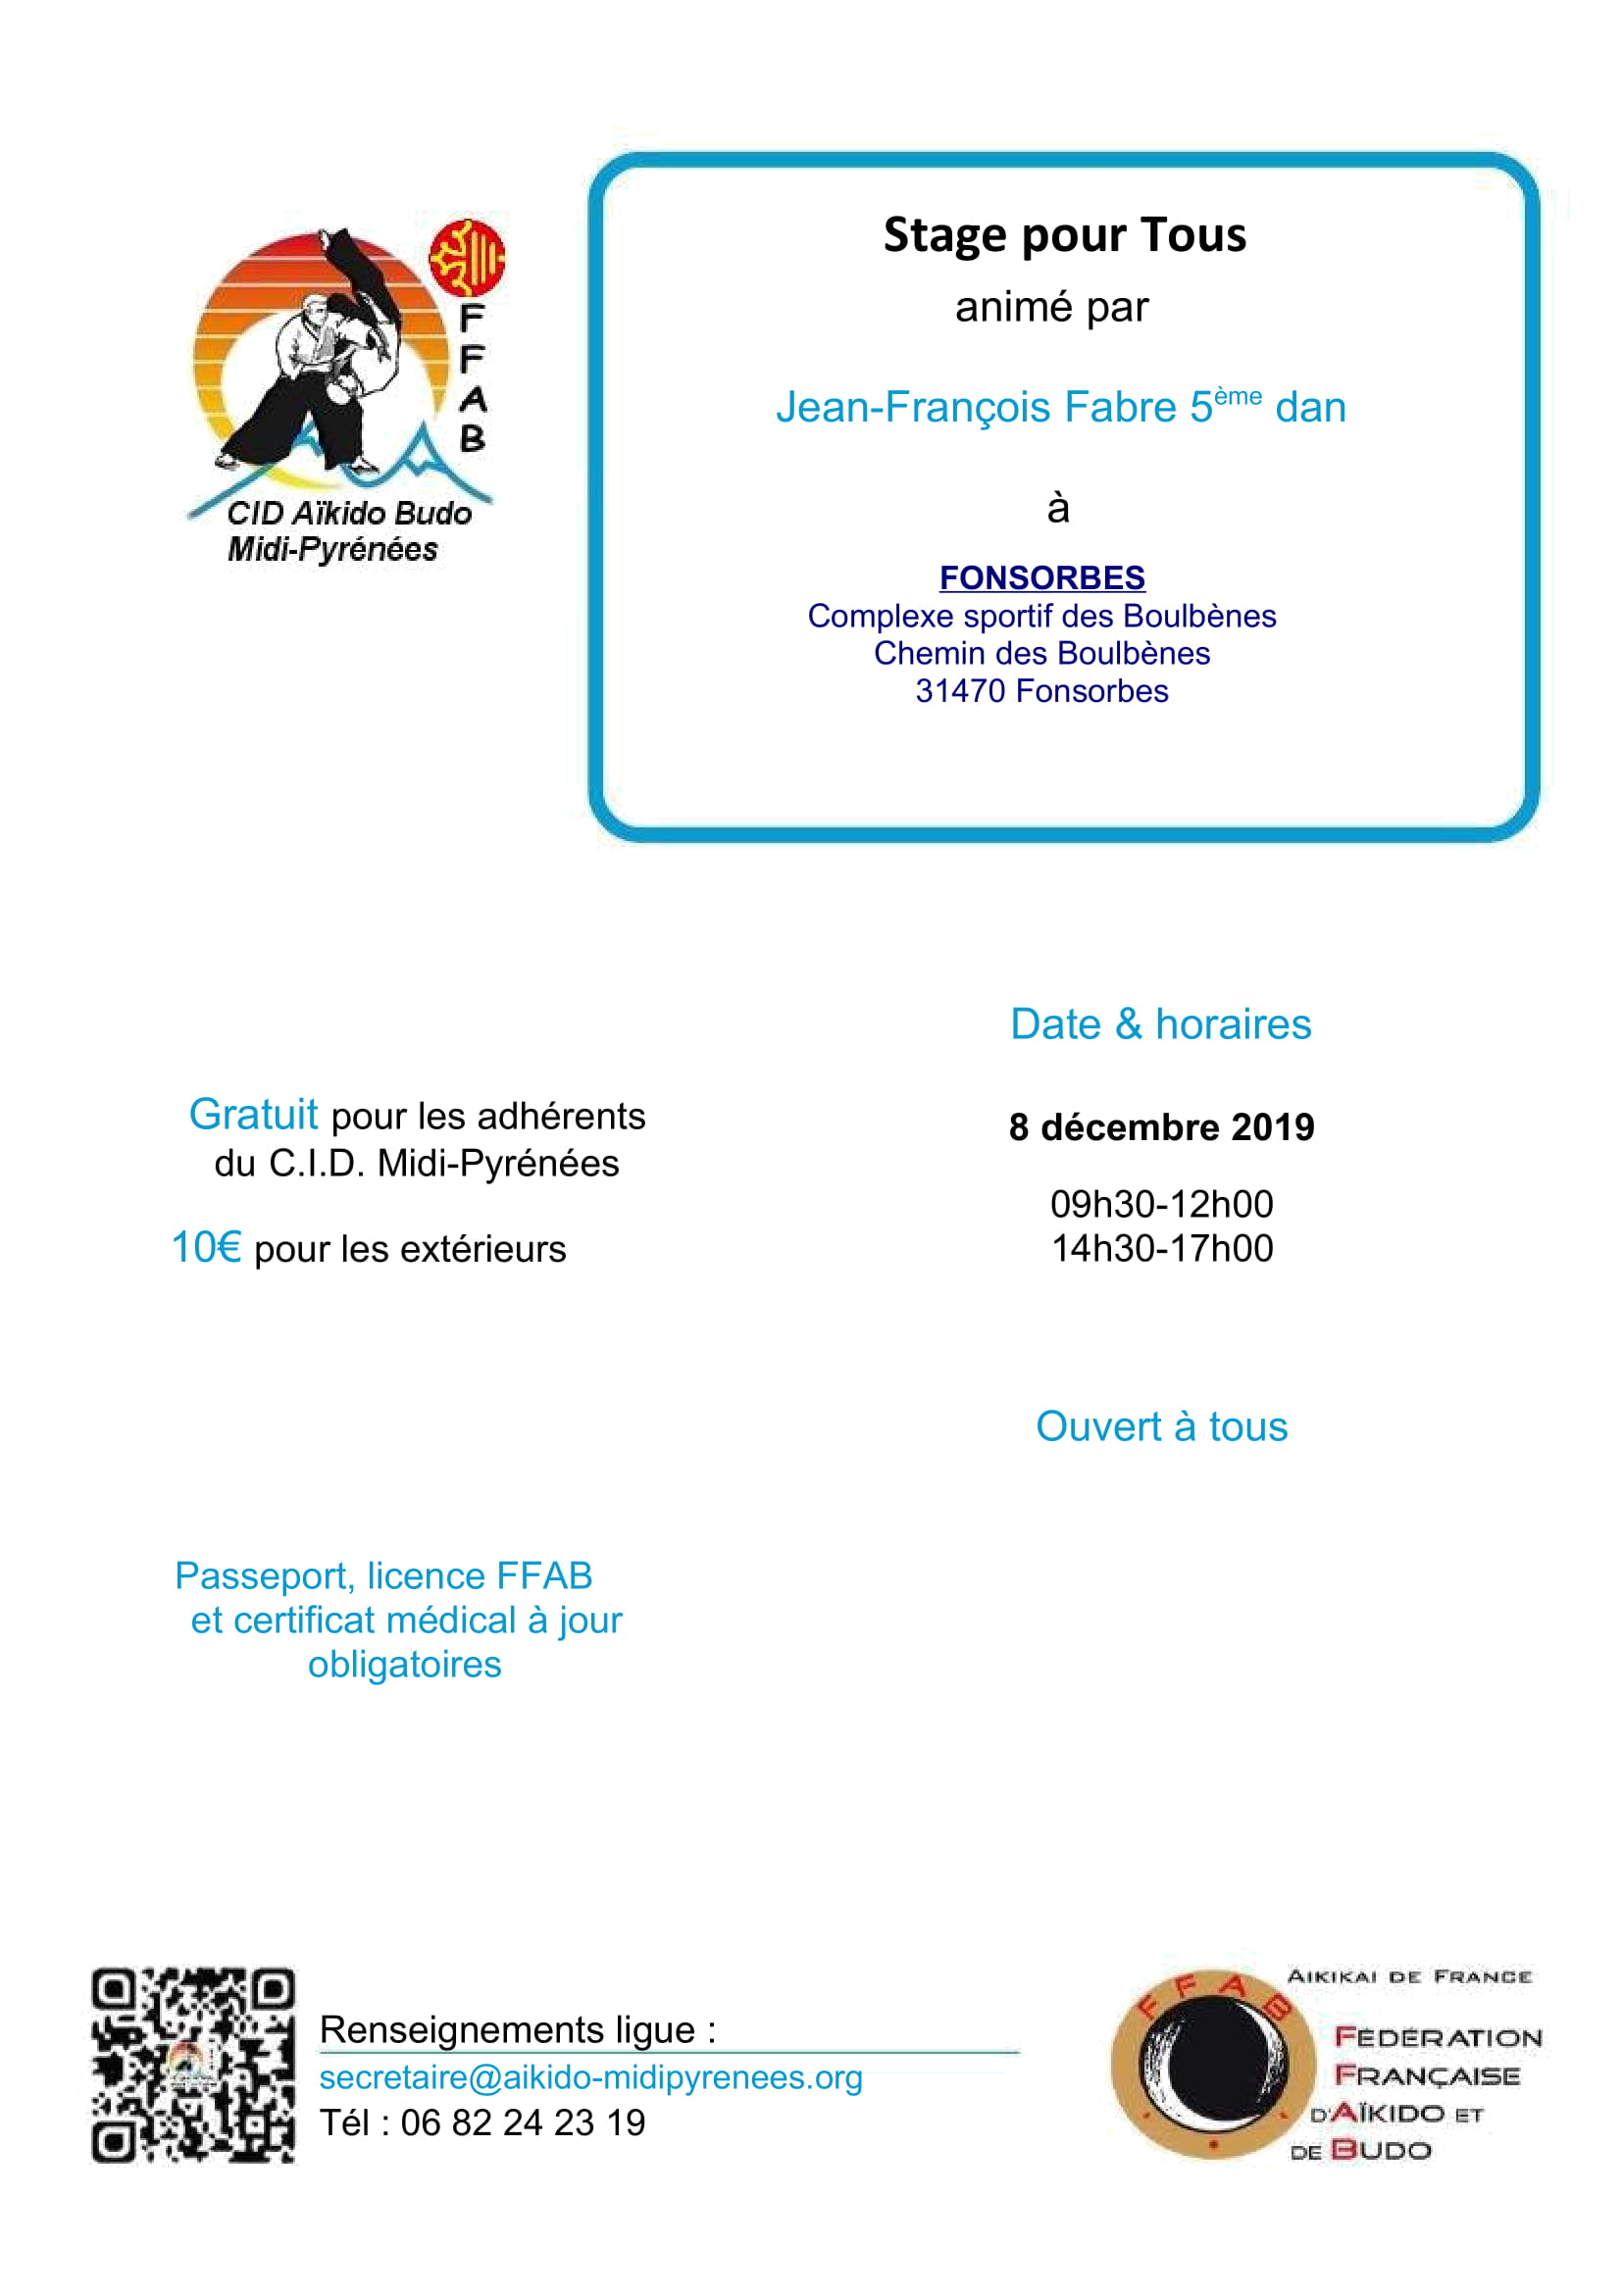 8 Décembre 2019 - Stage pour tous à Fonsorbes avec Jean-François Fabre 5ème dan